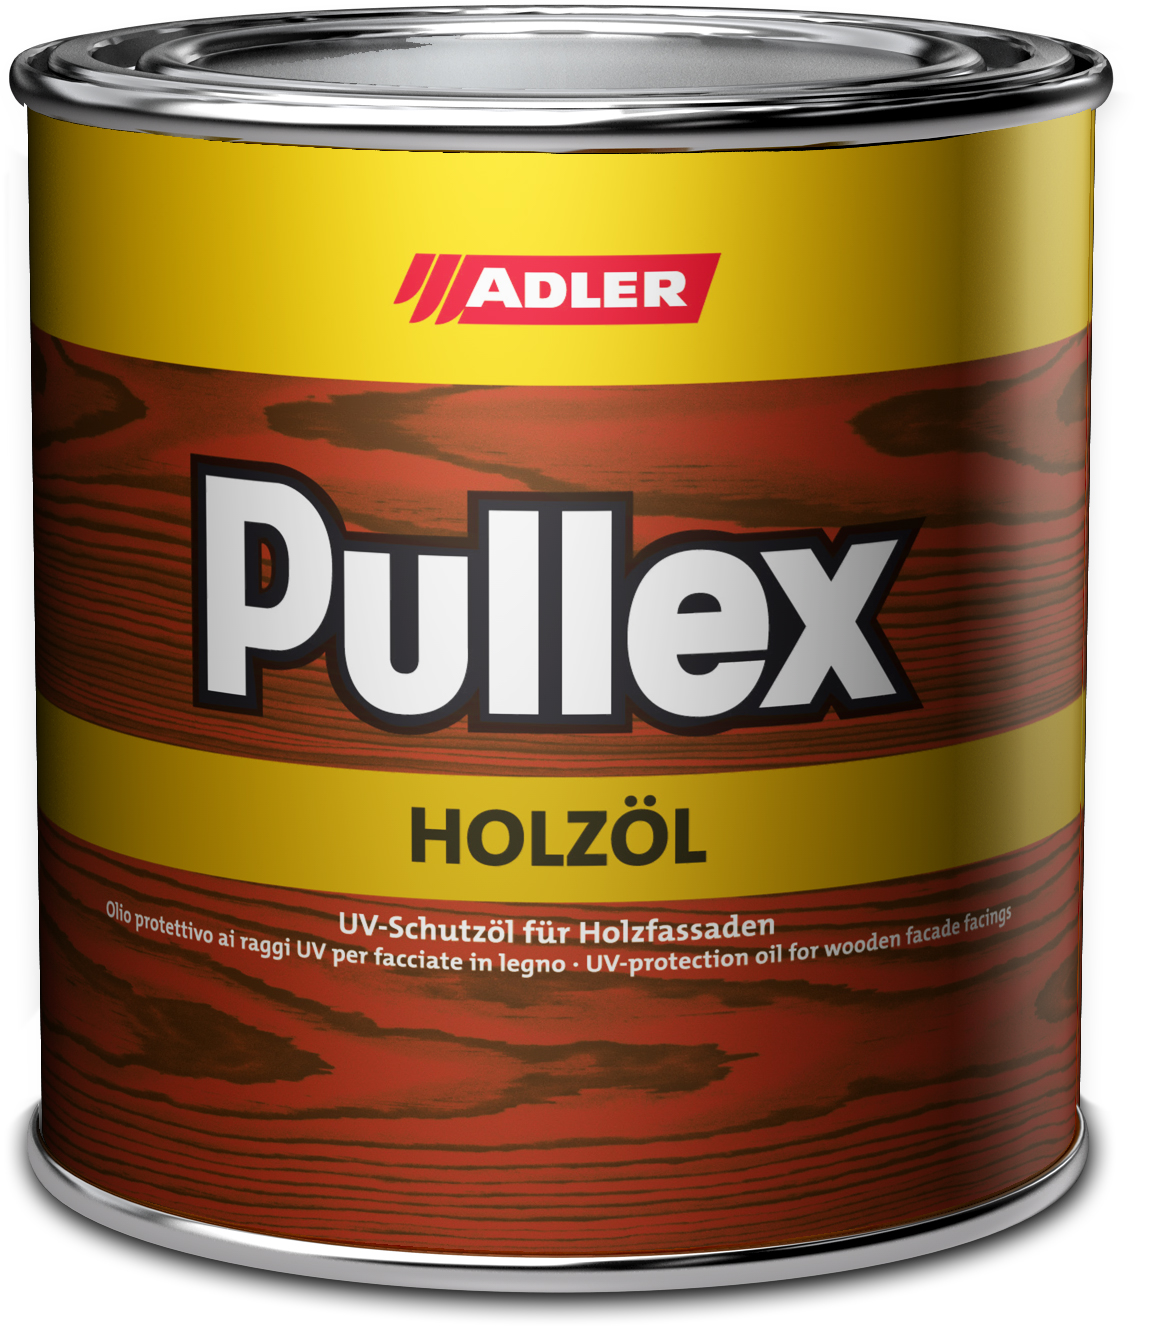 ADLER PULLEX HOLZÖL - UV ochranný olej na drevodomy a drevené obloženie ST 06/1 - weisser tiger 0,75 L